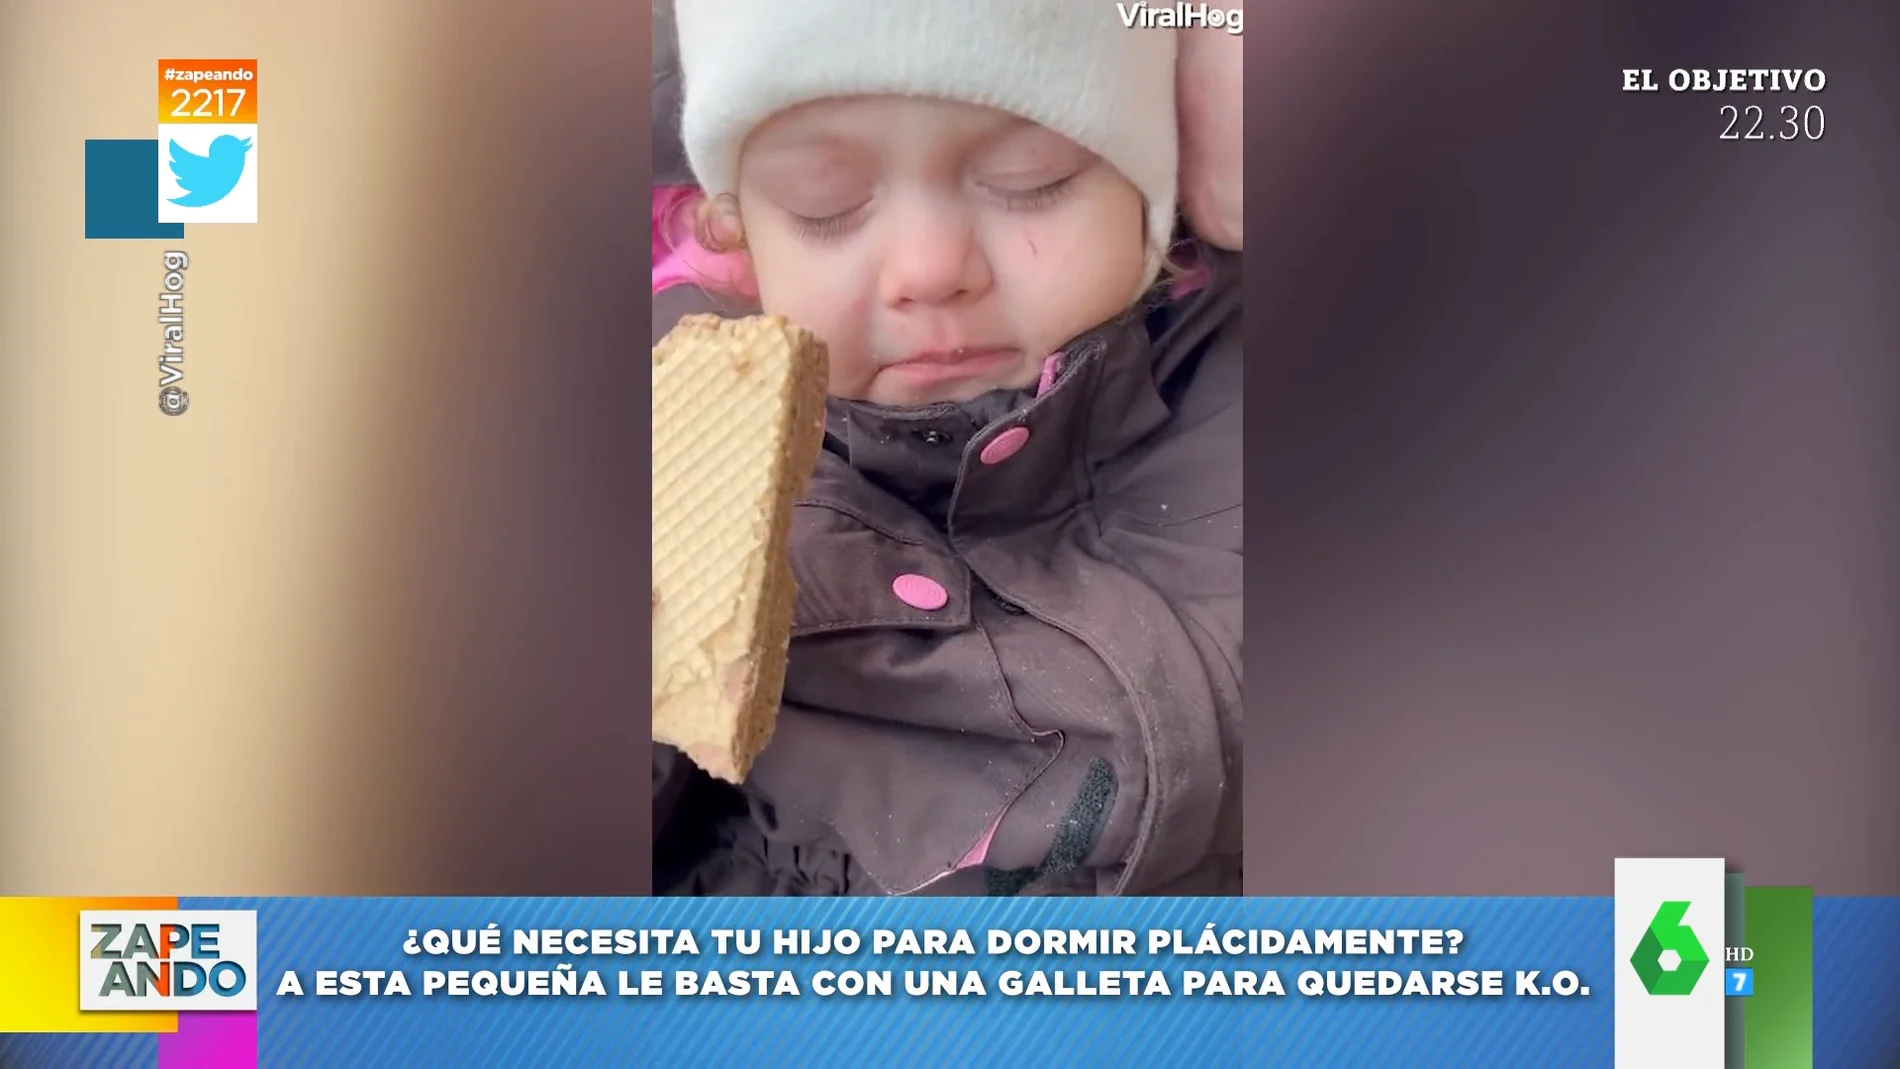 Vídeo viral de una niña durmiendo aferrada a una galleta